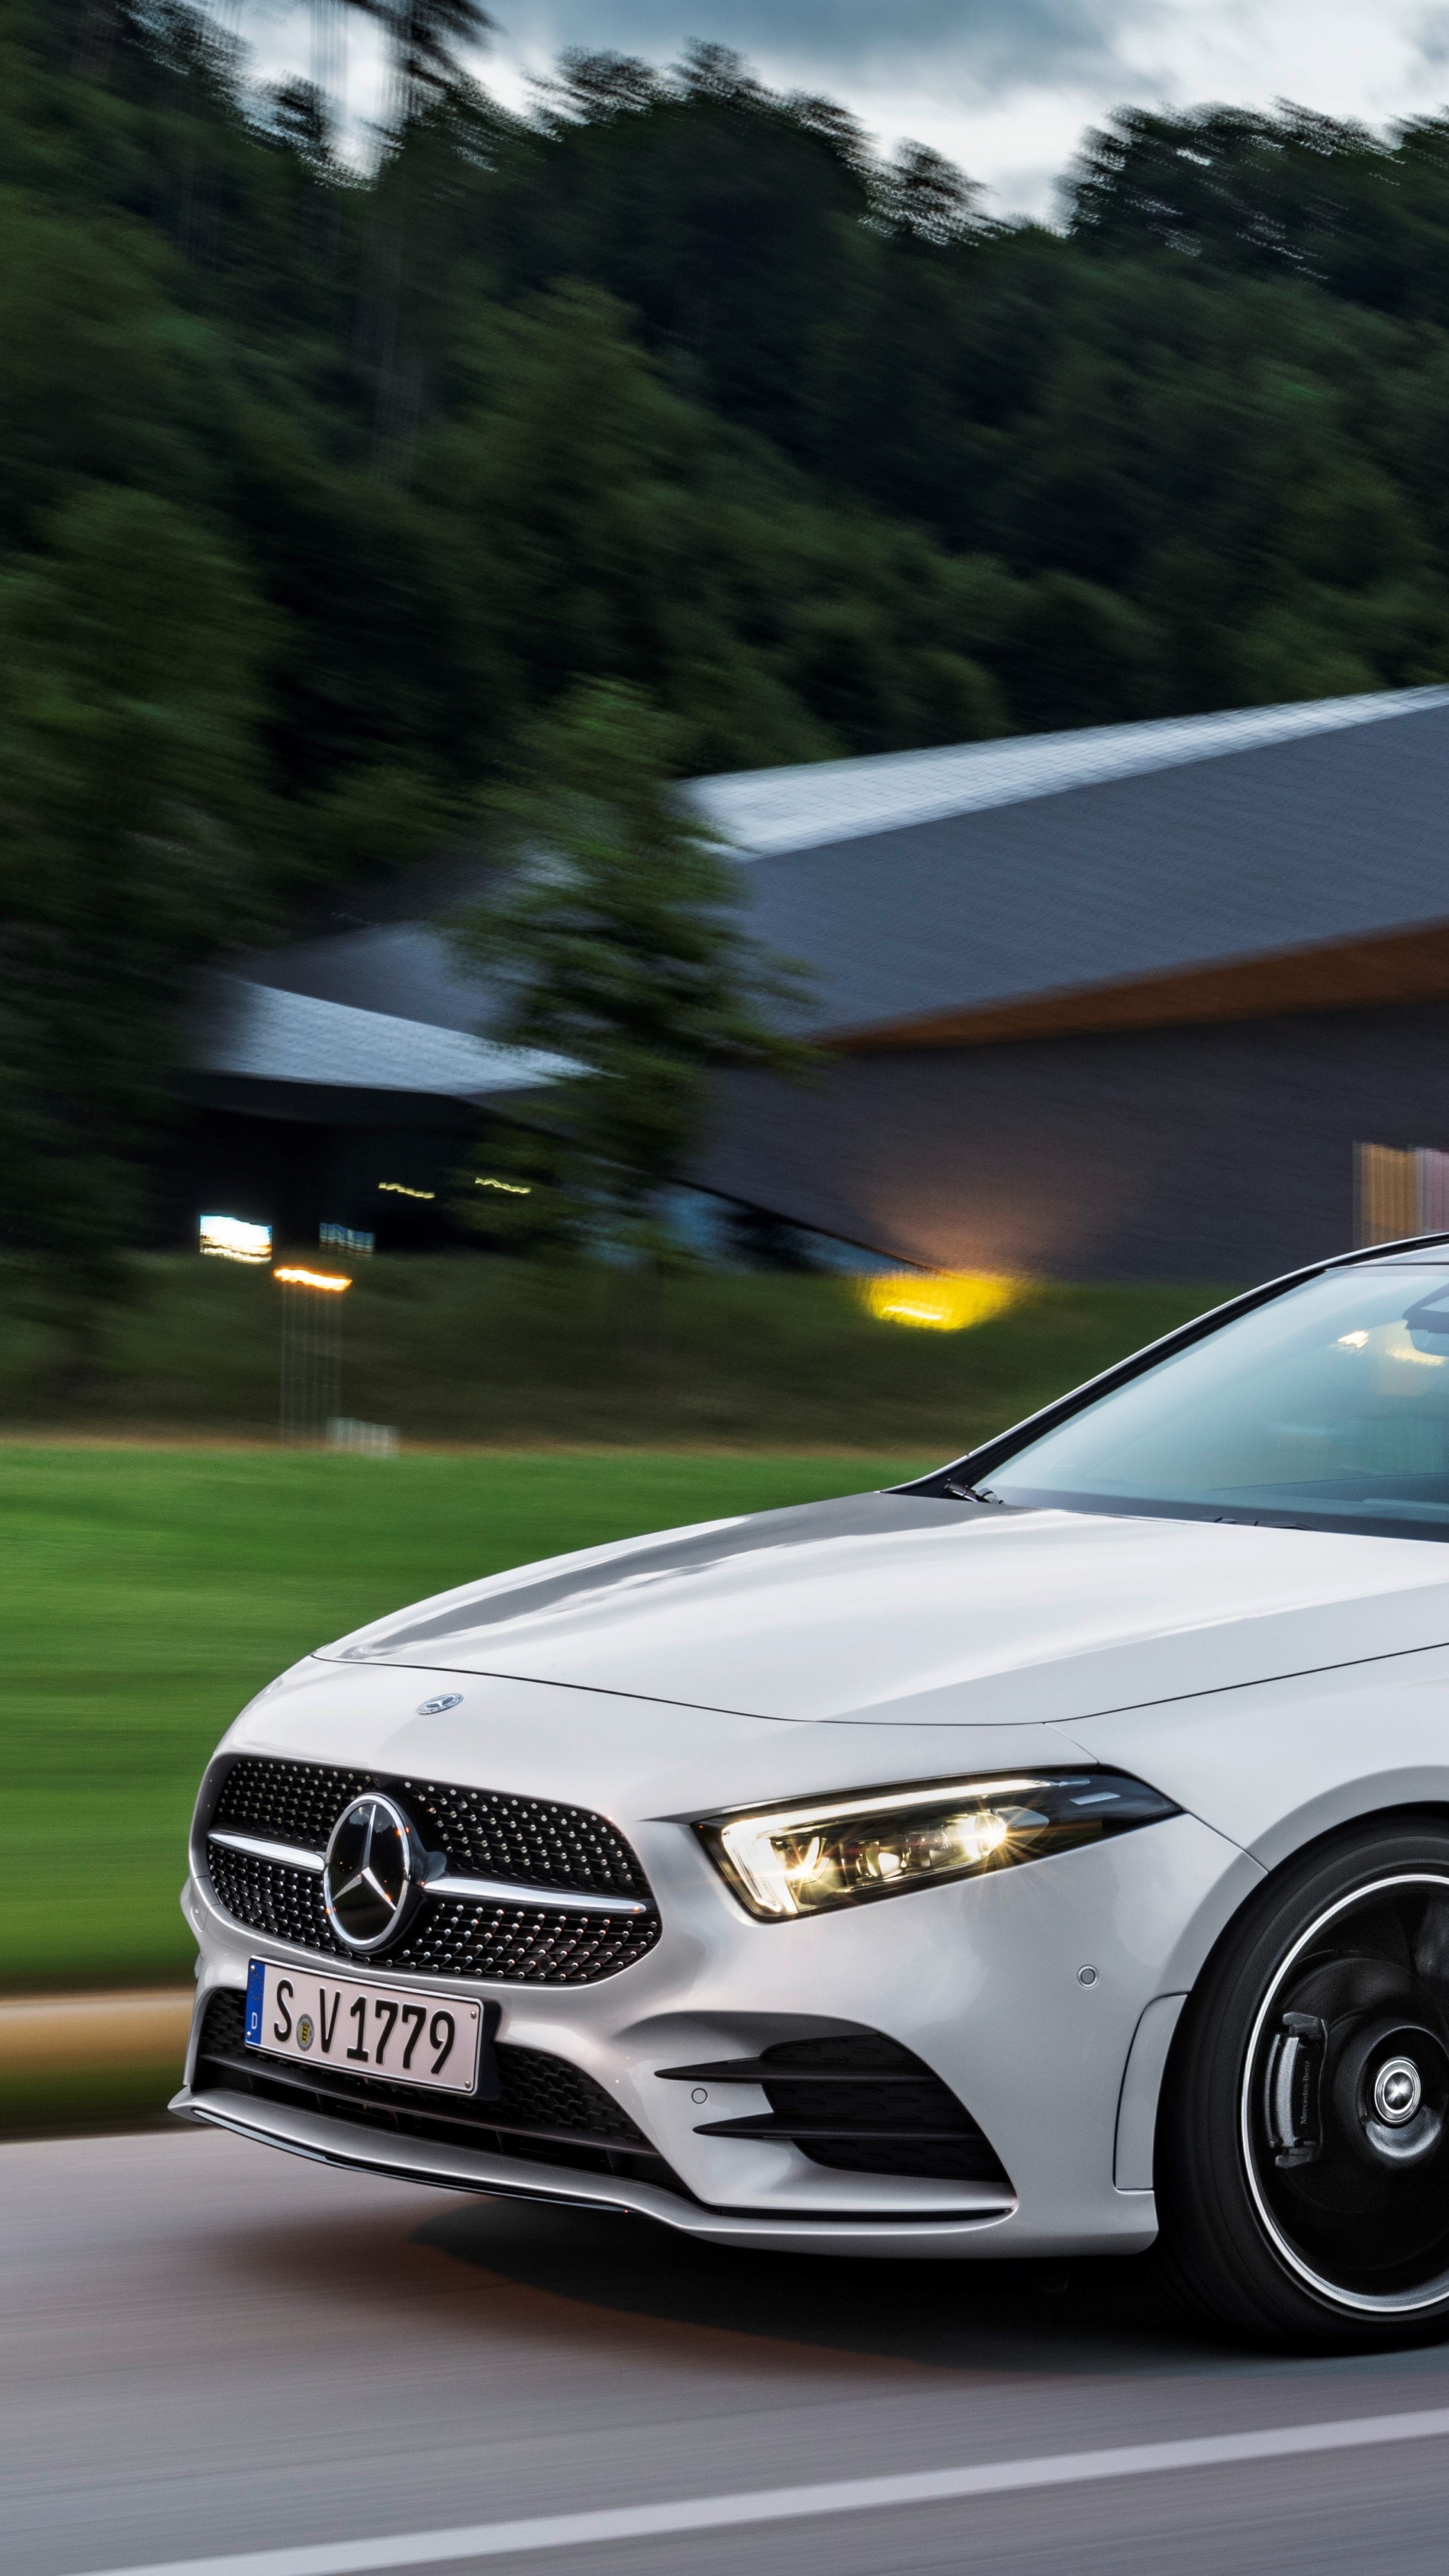 Mercedes-Benz A-Class, Sporty elegance, High-definition wallpapers, Cutting-edge technology, 2160x3840 4K Handy